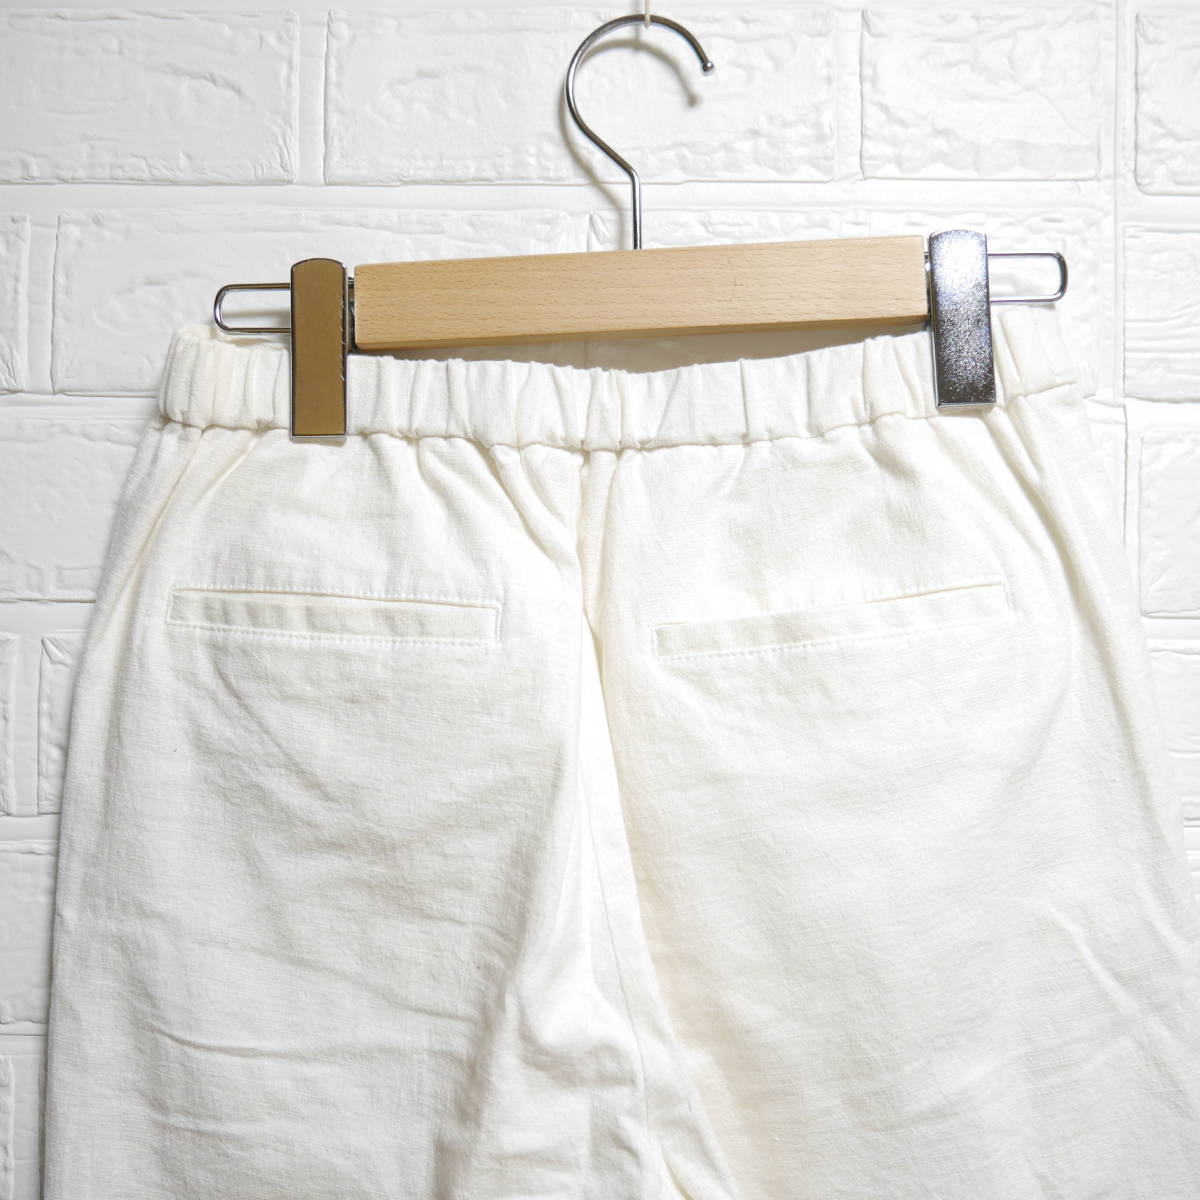 A391 * Ungrid | Ungrid bottoms pants white used size M